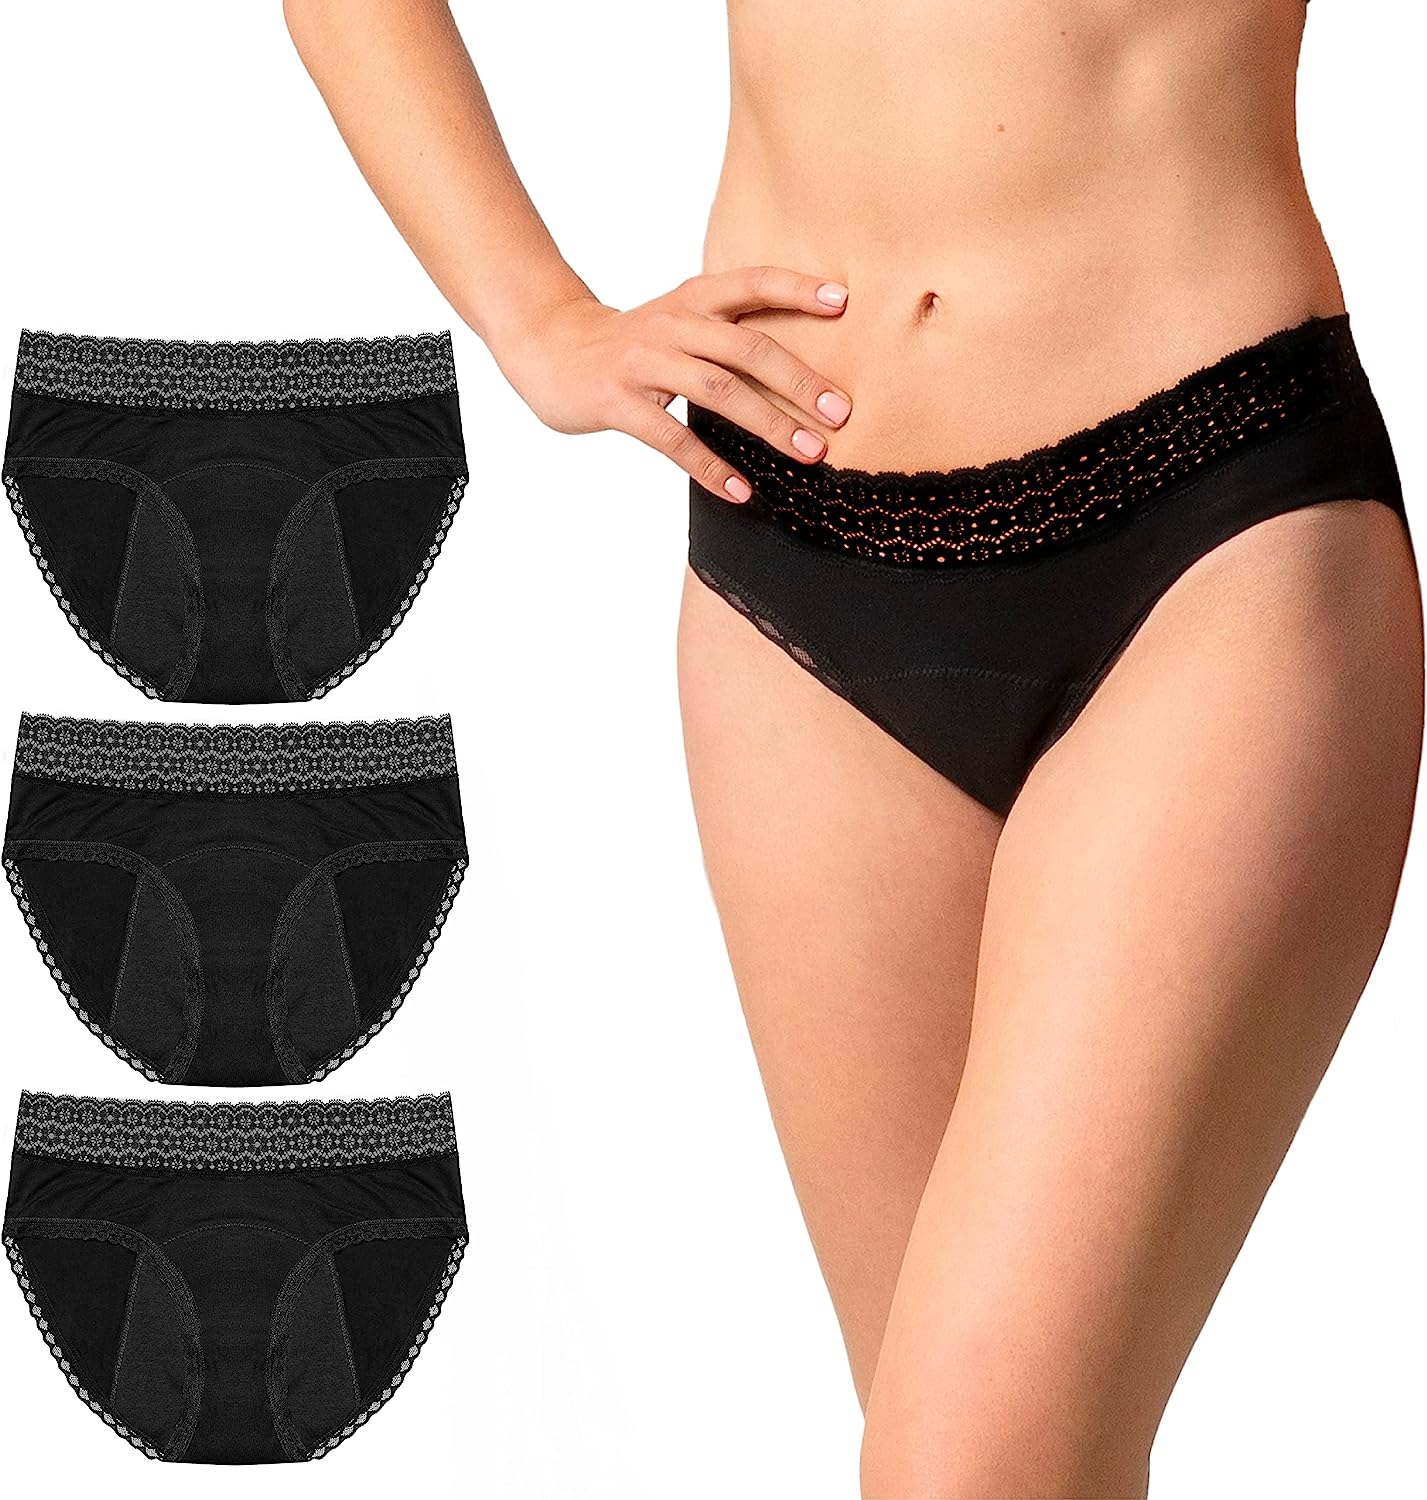 ZENAPHYR period underwear set